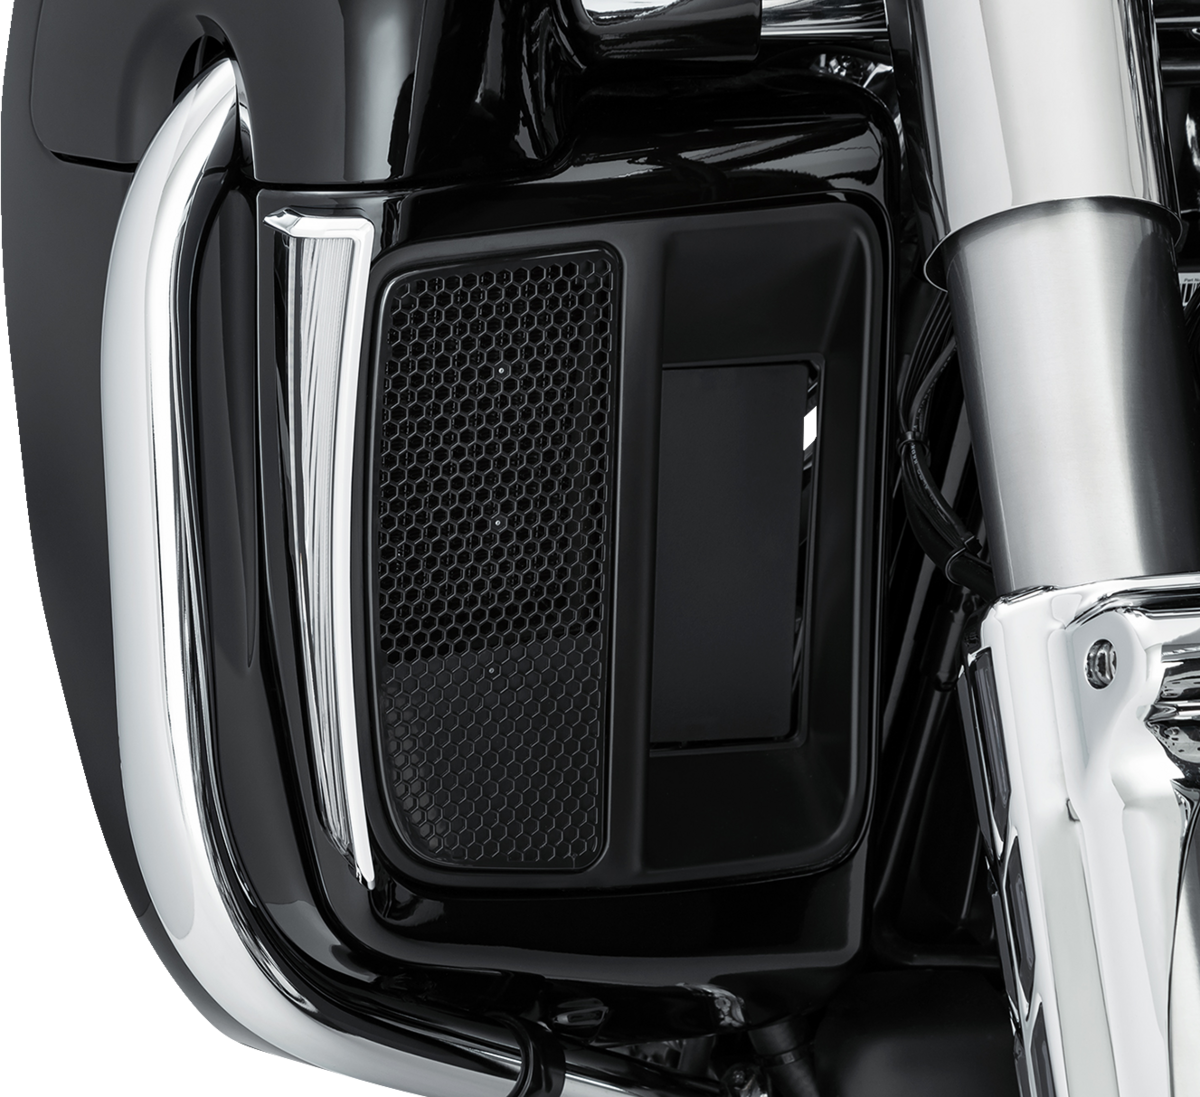 Fang® Lights for Lower Carenado Chrome for Harley Davidson